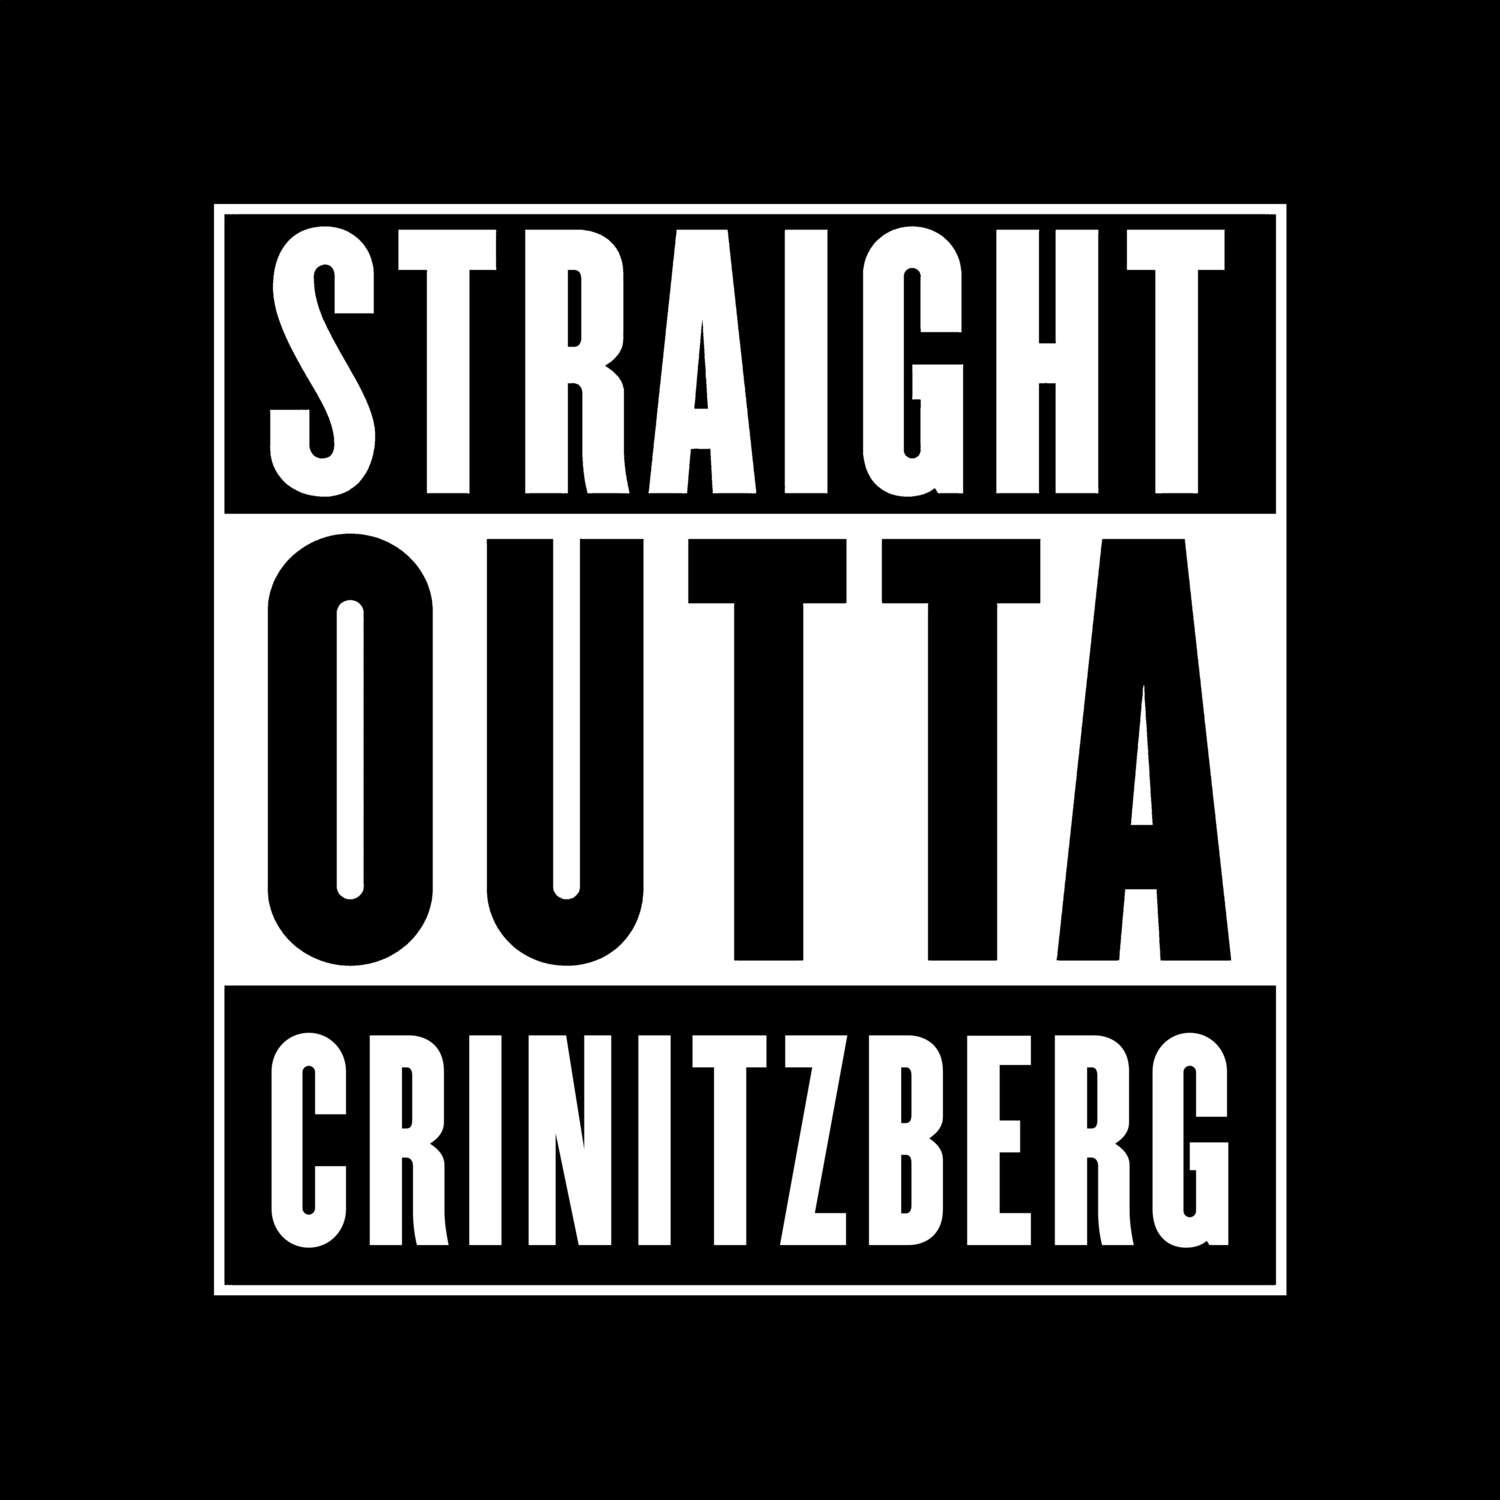 Crinitzberg T-Shirt »Straight Outta«